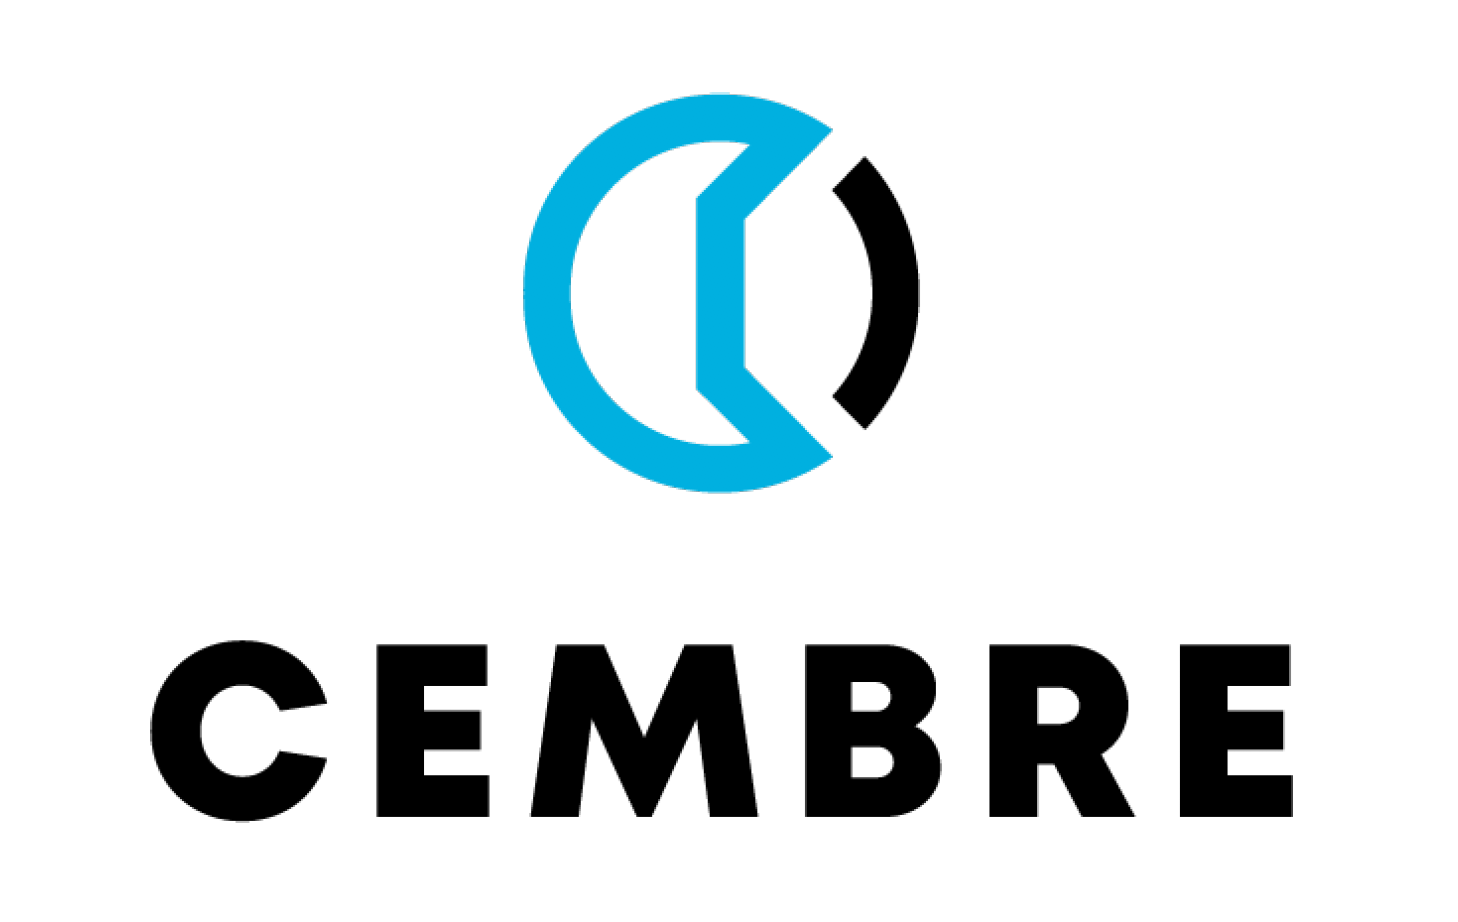 Cembre GmbH